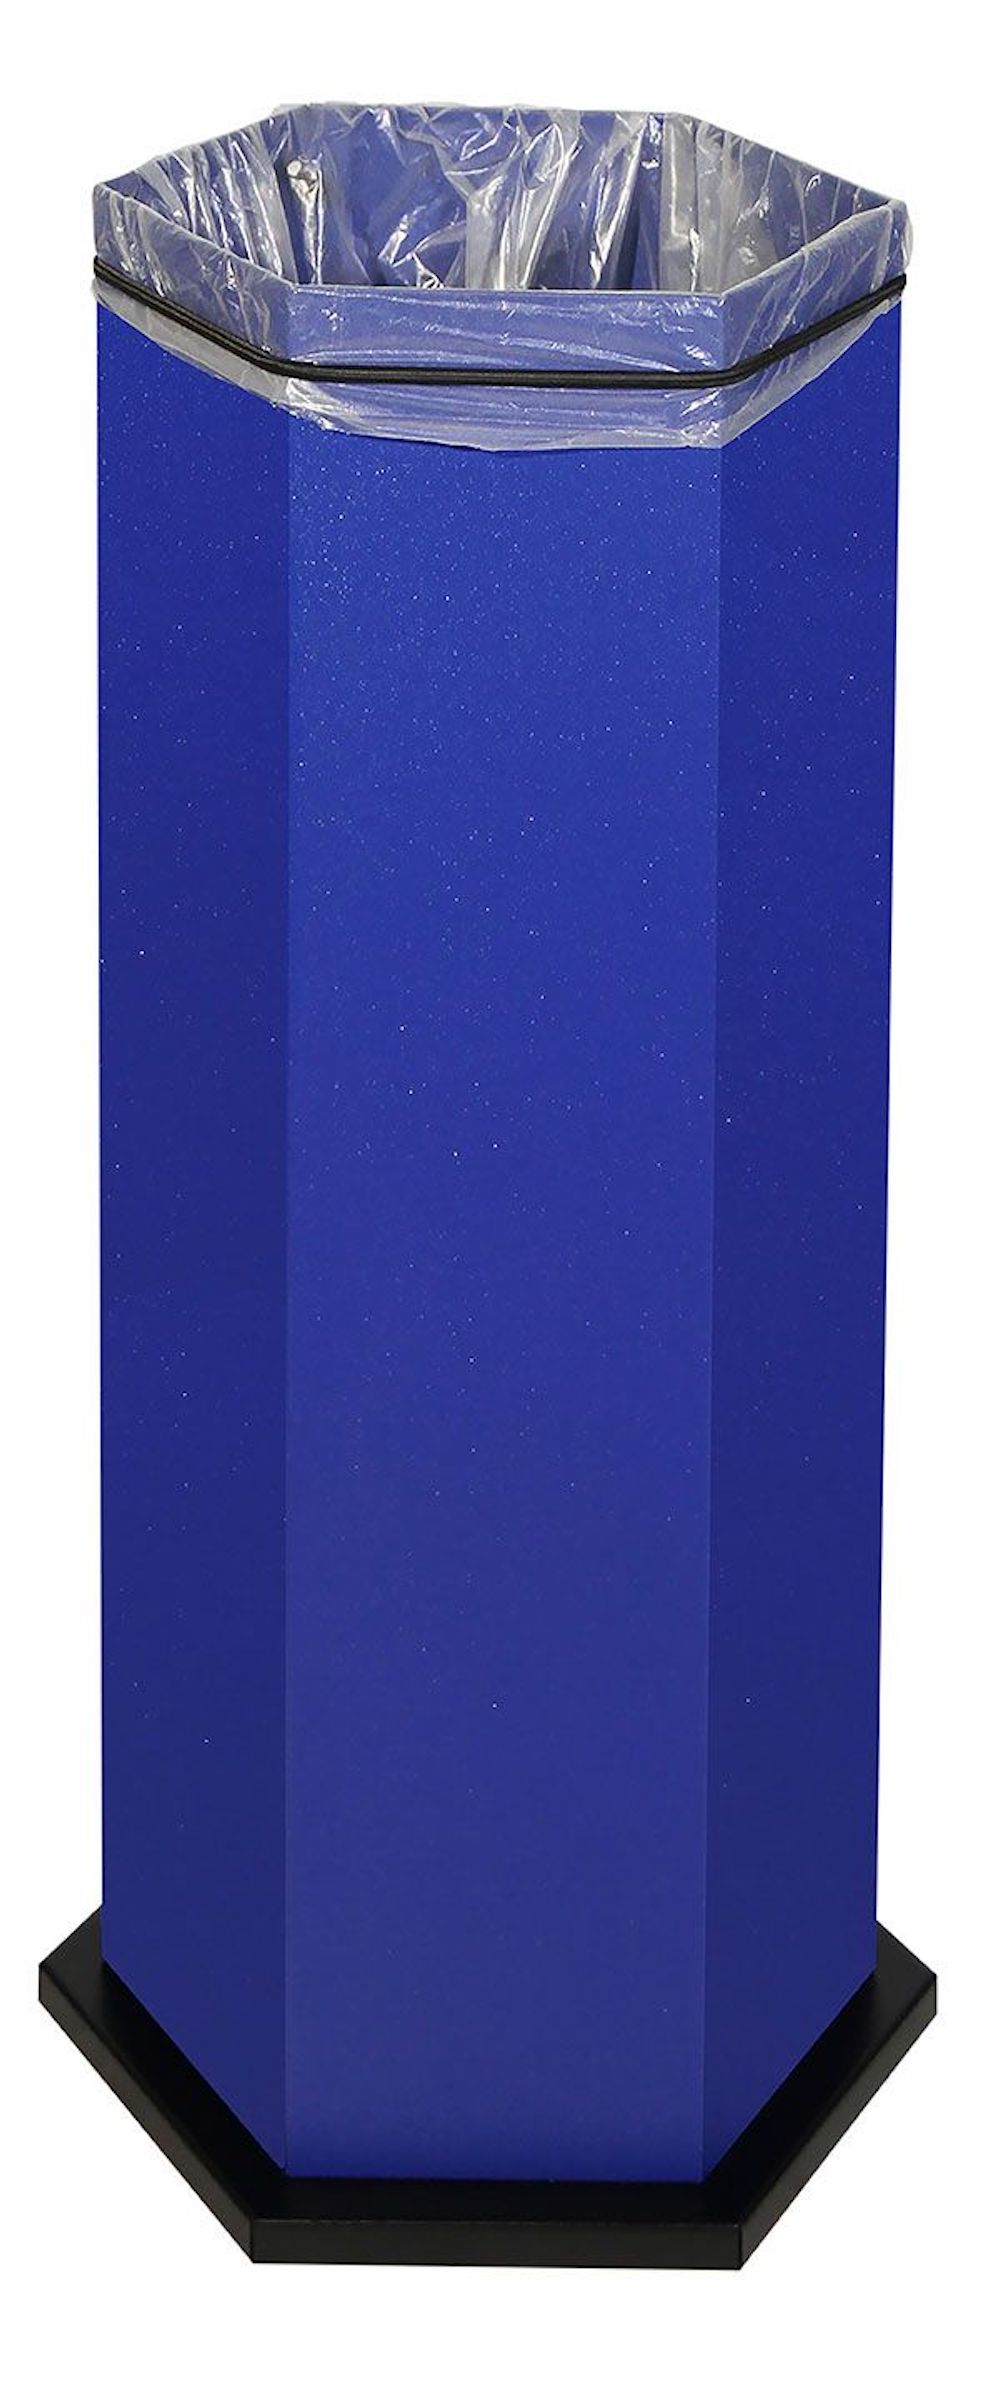 Abfallsammler mit Edelstahl-Einwurfklappe & Touchless-Öffnungsautomatik | 45 Liter, HxBxT 83x33x38cm | inkl. Ladegerät | Ultramarinblau